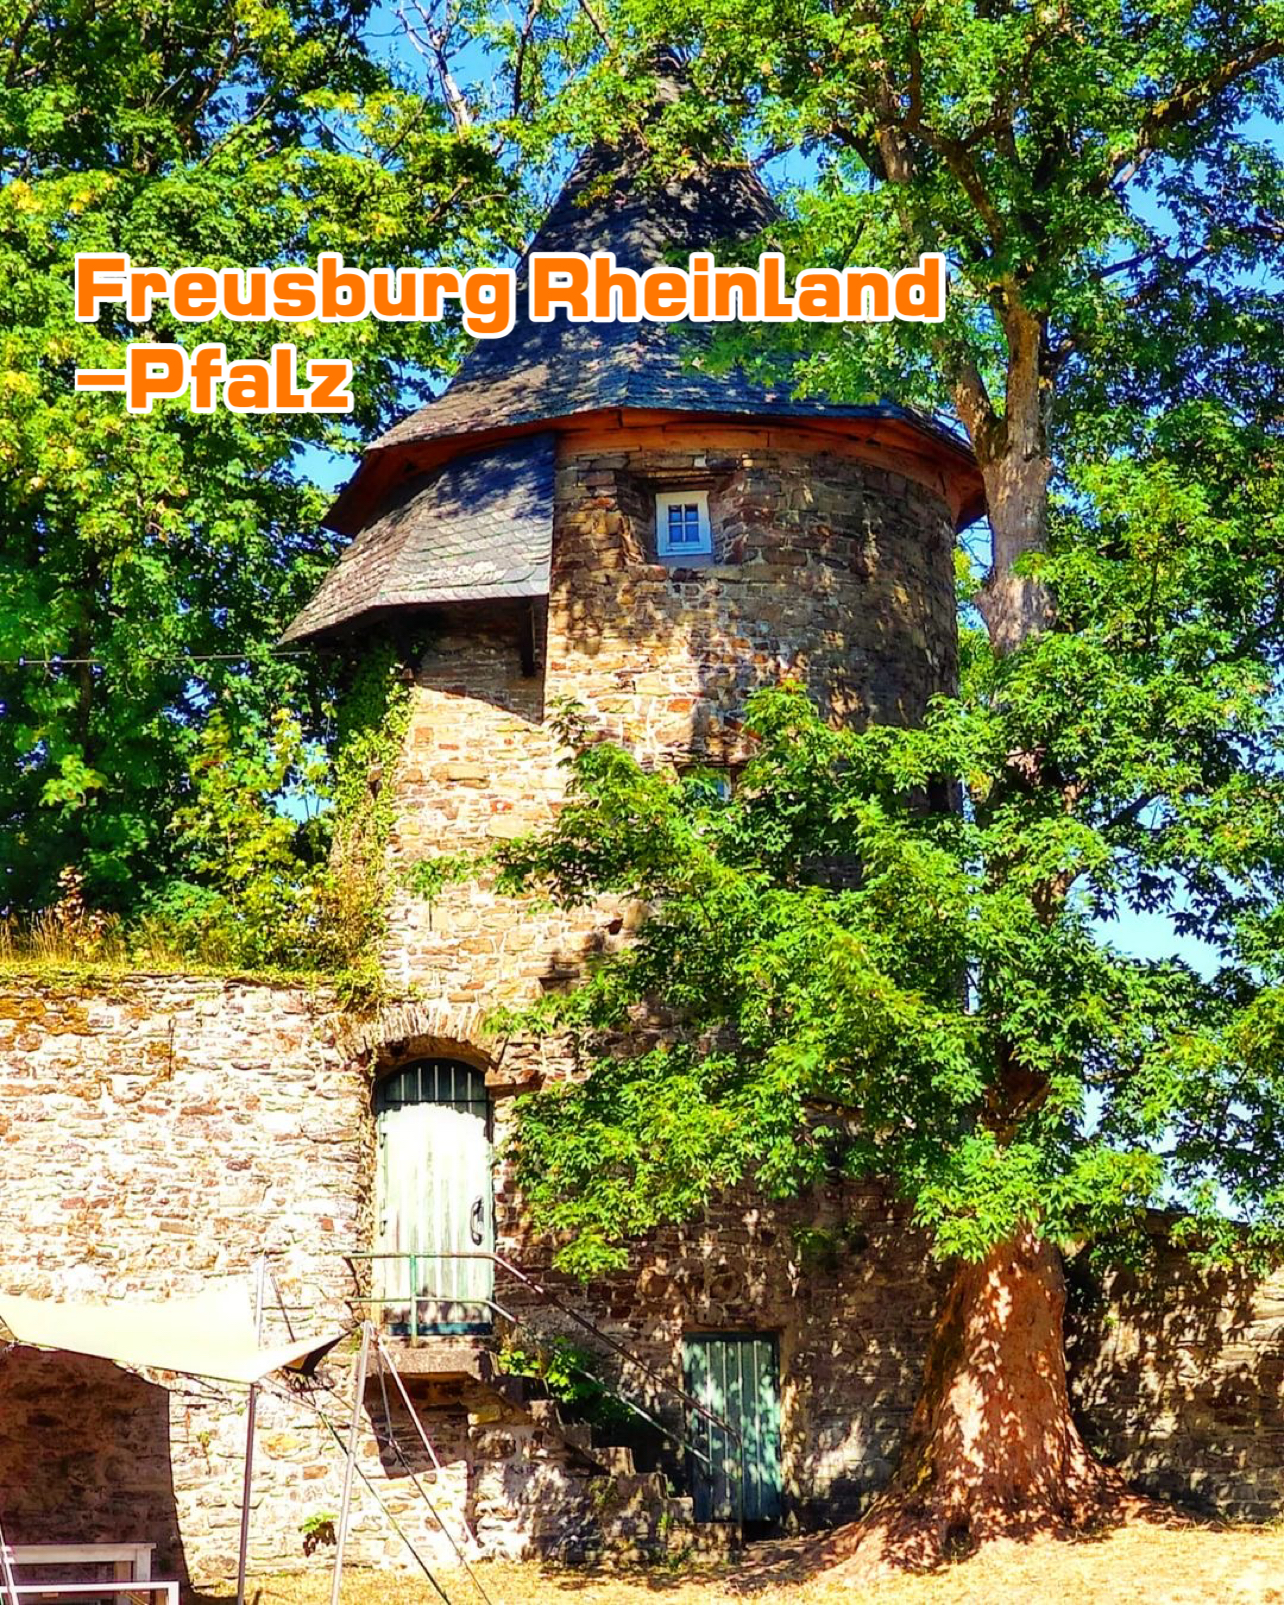 Freusburg Rheinland -Pfalz